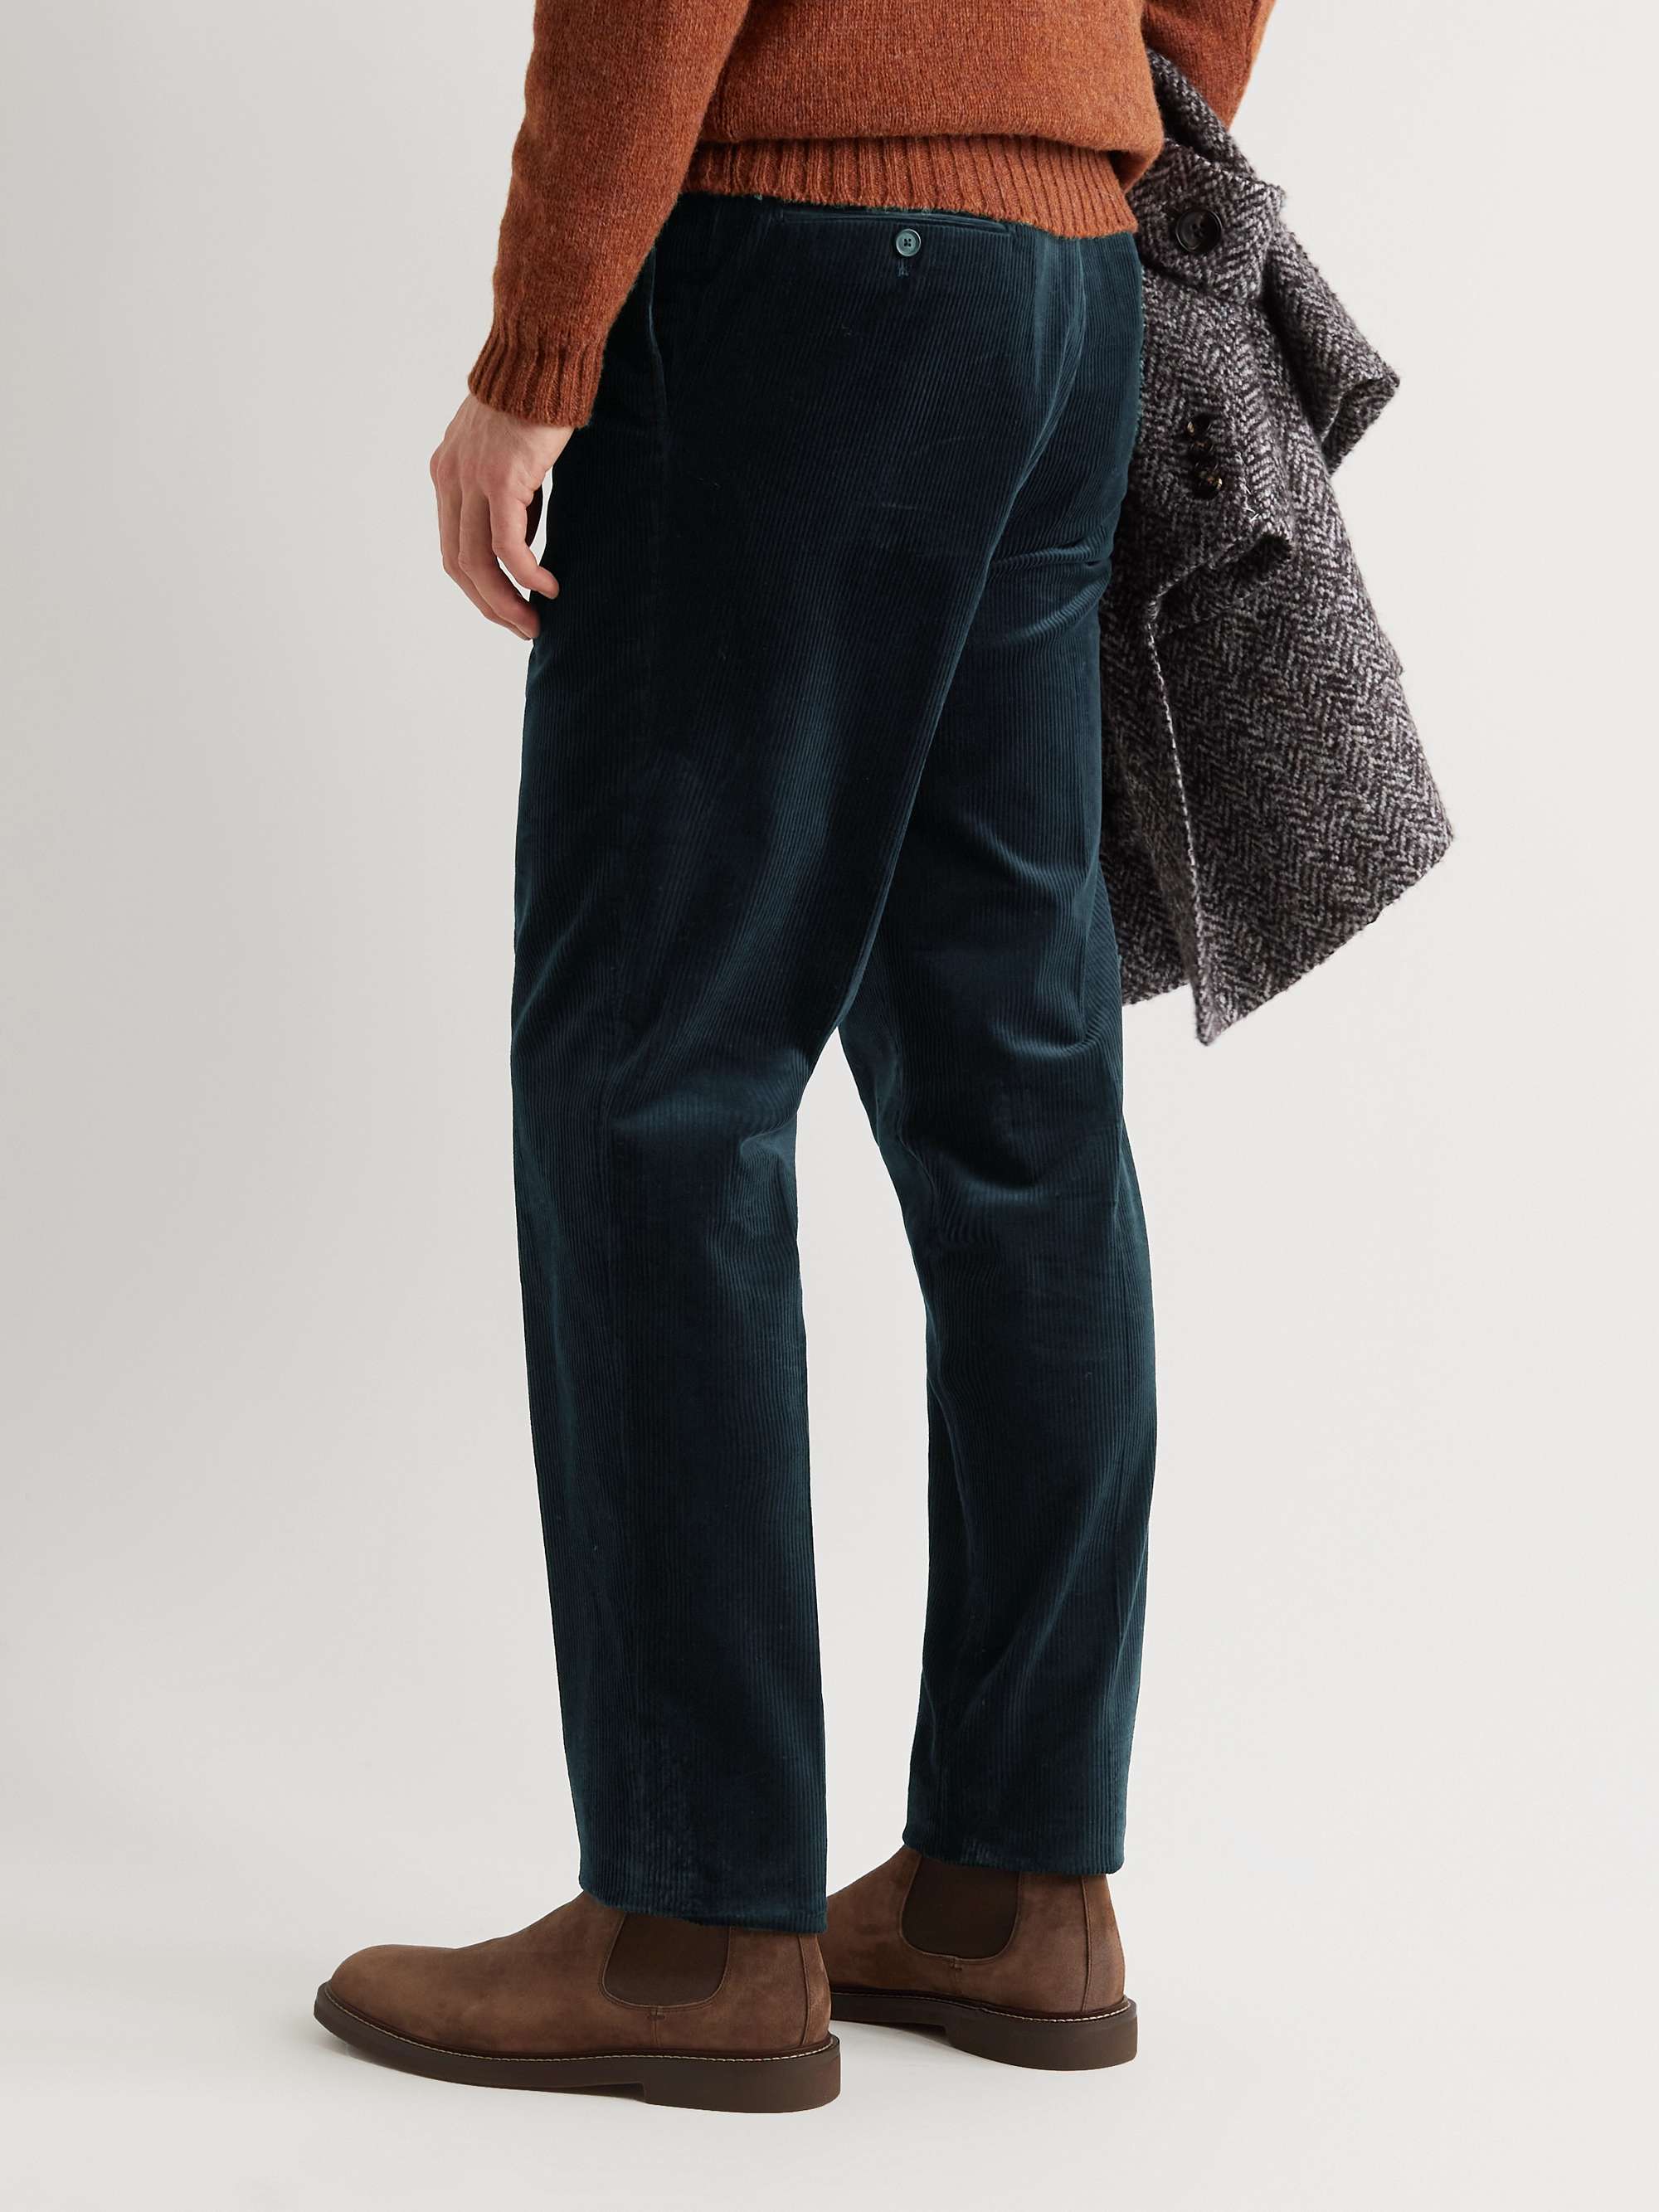 DE PETRILLO Straight-Leg Pleated Cotton-Blend Corduroy Trousers